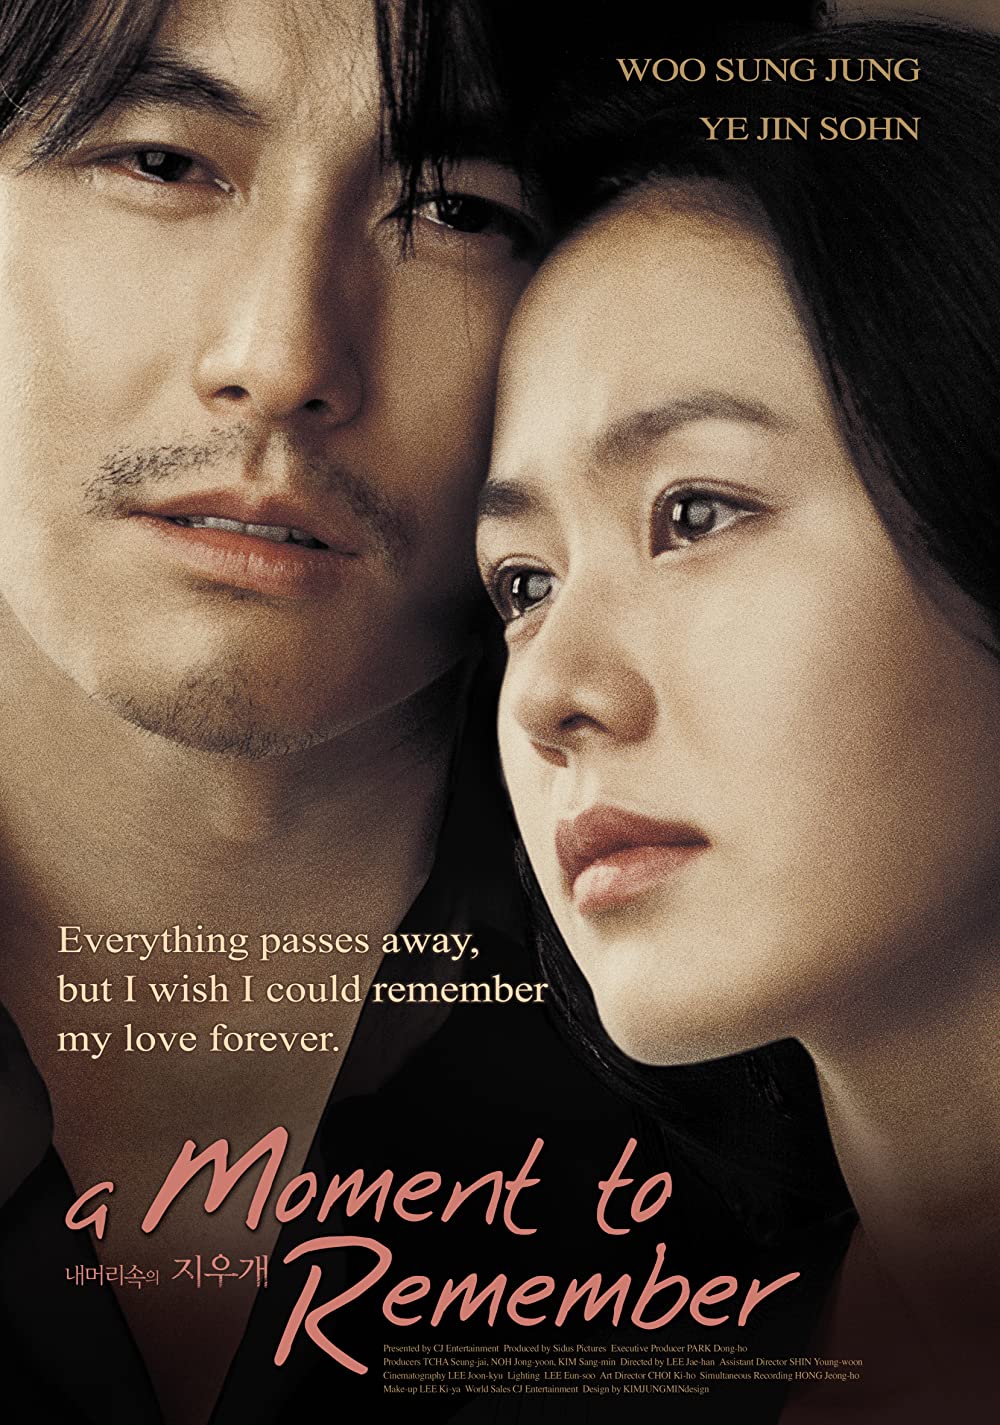 หนัง A Moment to Remember (2004) ผมจะเป็นความทรงจำให้คุณเอง..ที่รัก (ซับไทย)